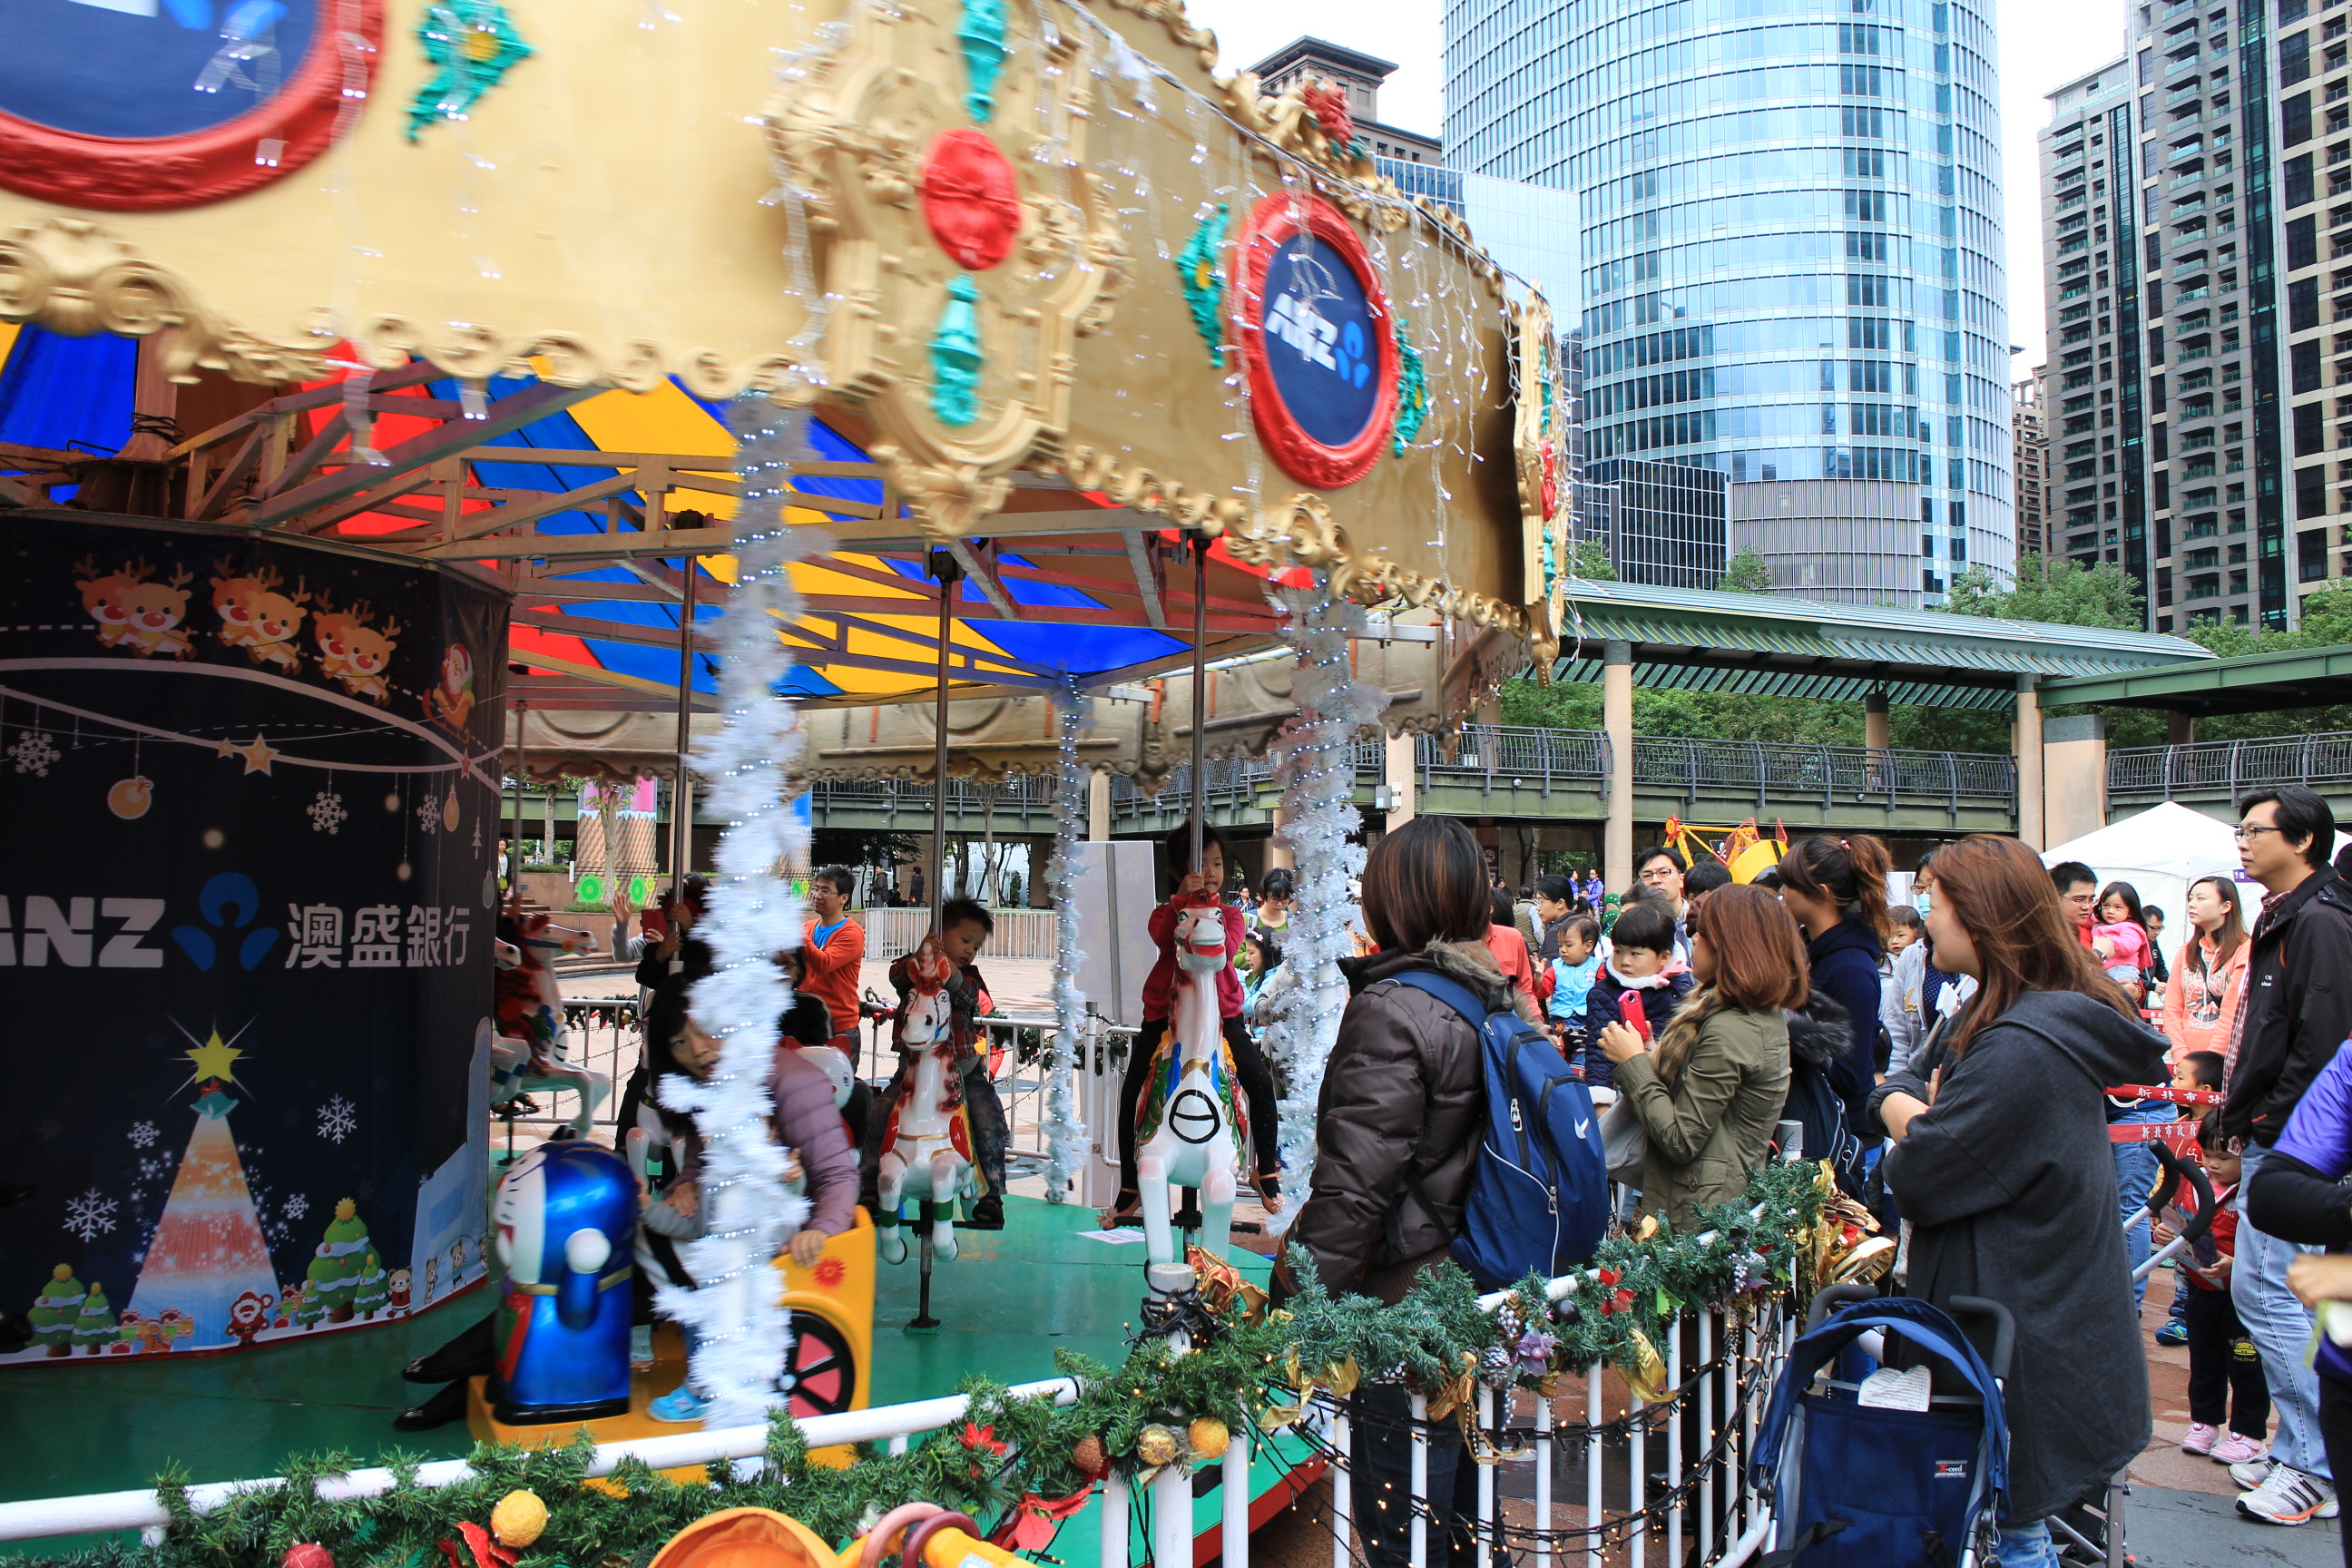 「童樂耶誕趴」打頭陣 整個城市都是孩子的遊樂園
點燈了！新北耶誕城今起開城51天
